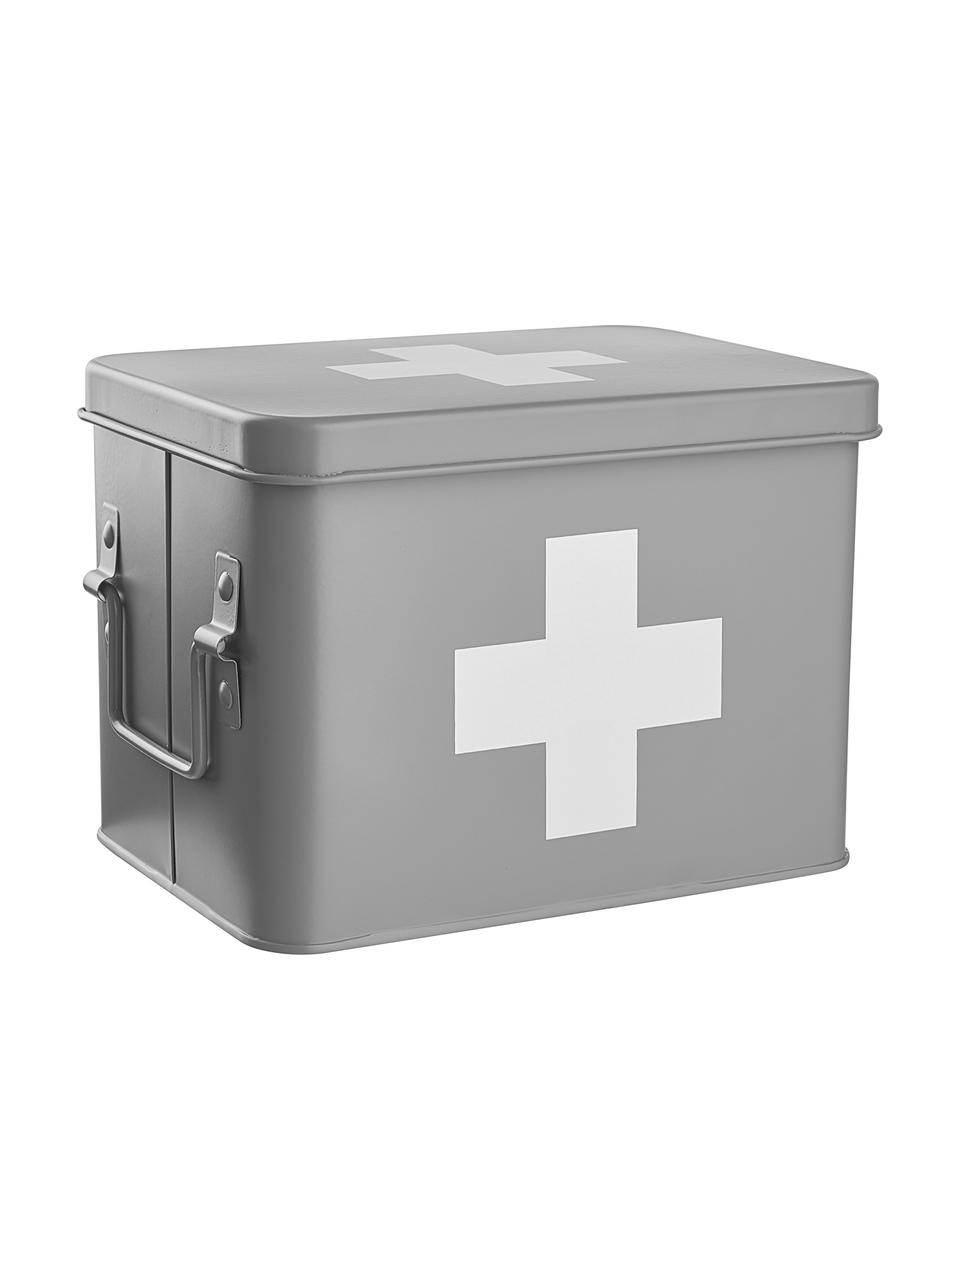 Aufbewahrungsbox Medic in Hellgrau/Weiß, Metall, beschichtet, Hellgrau, Weiß, B 22 x H 16 cm